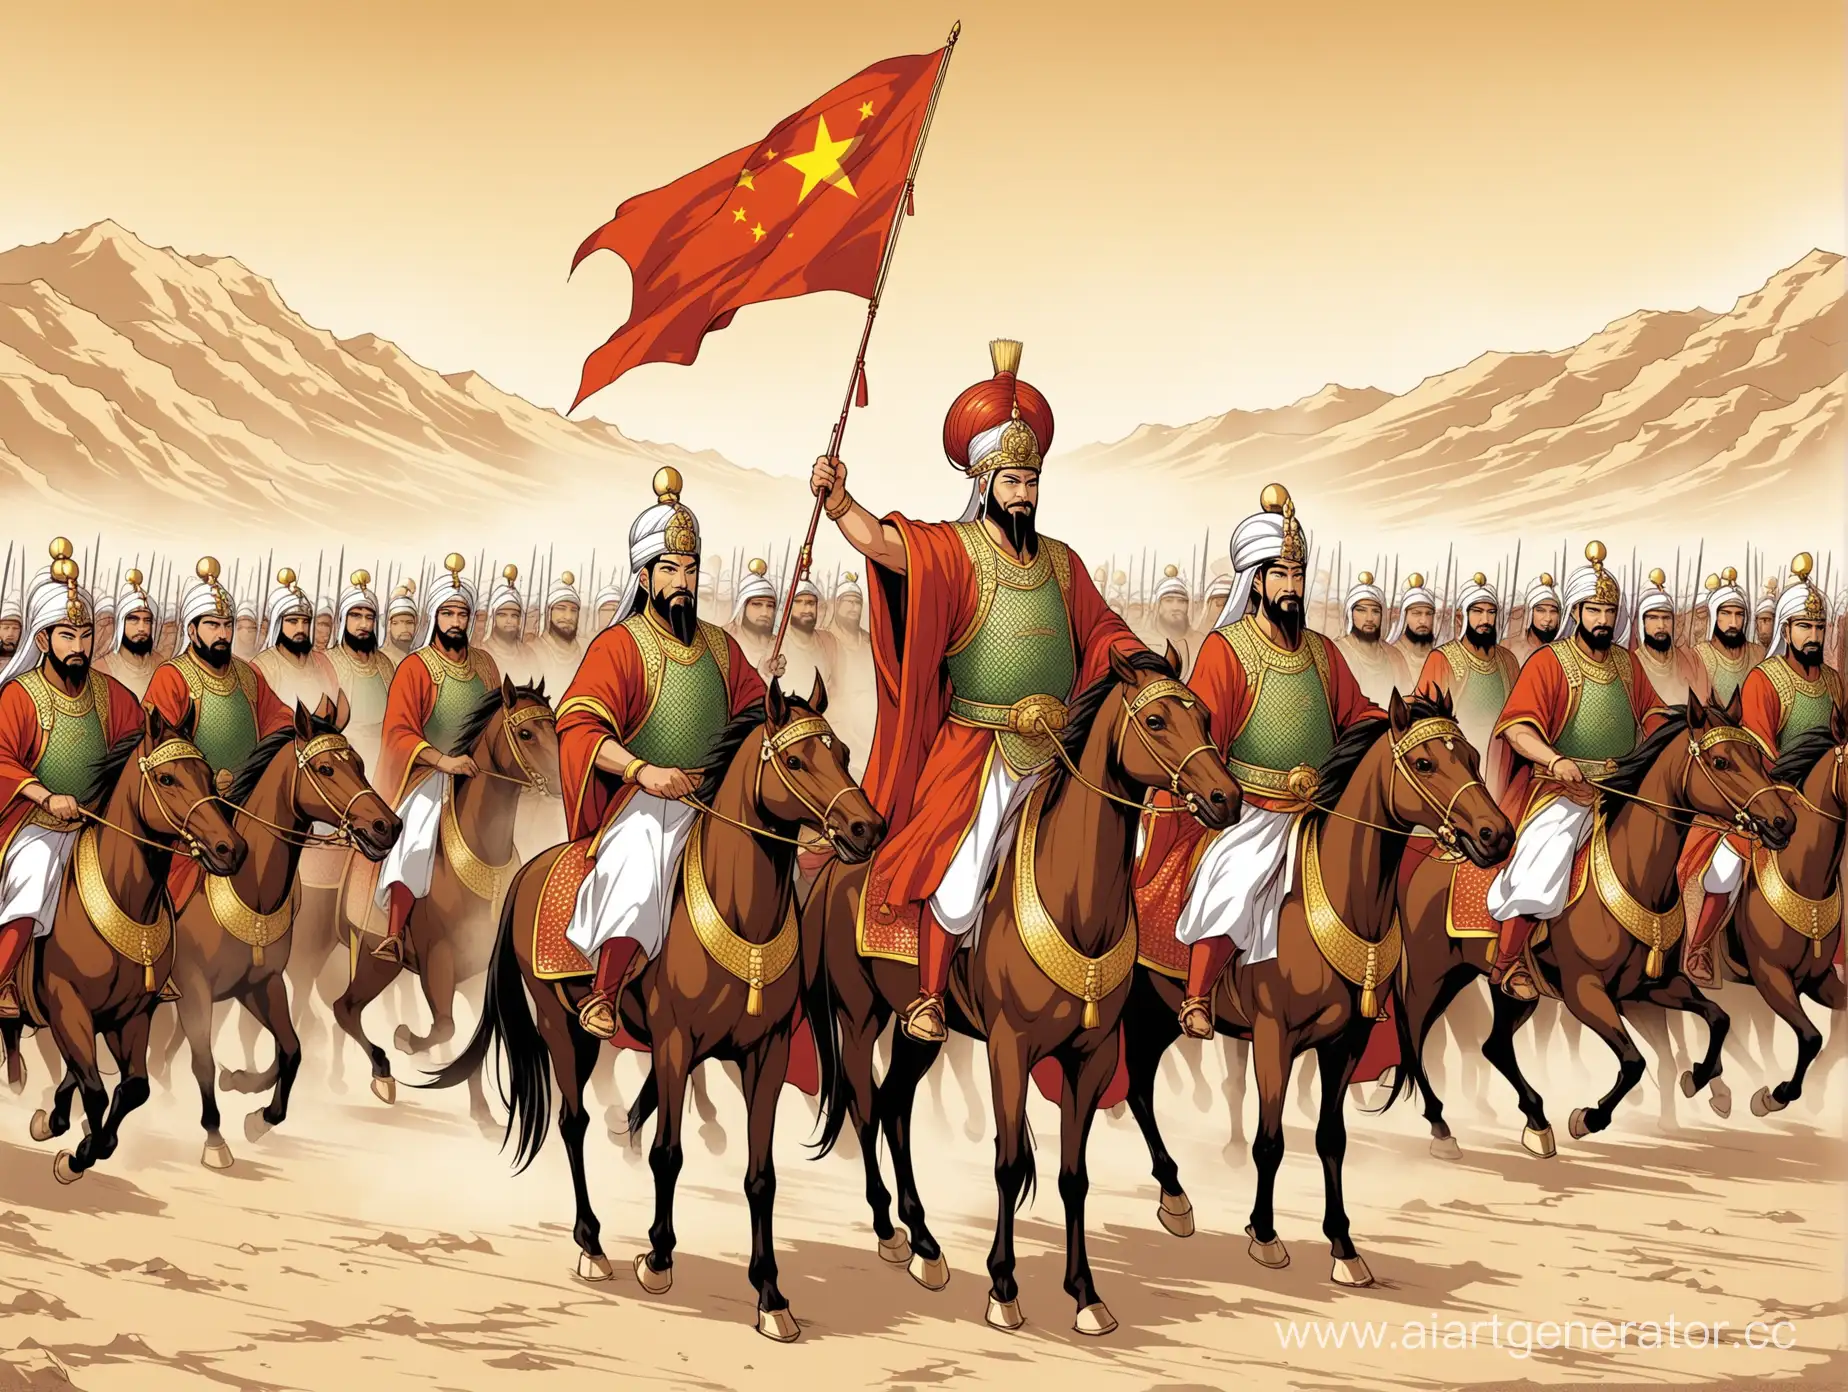 Китайский император позвал арабских воинов для защиты своей страны от врагов, в стиле азиатской графики